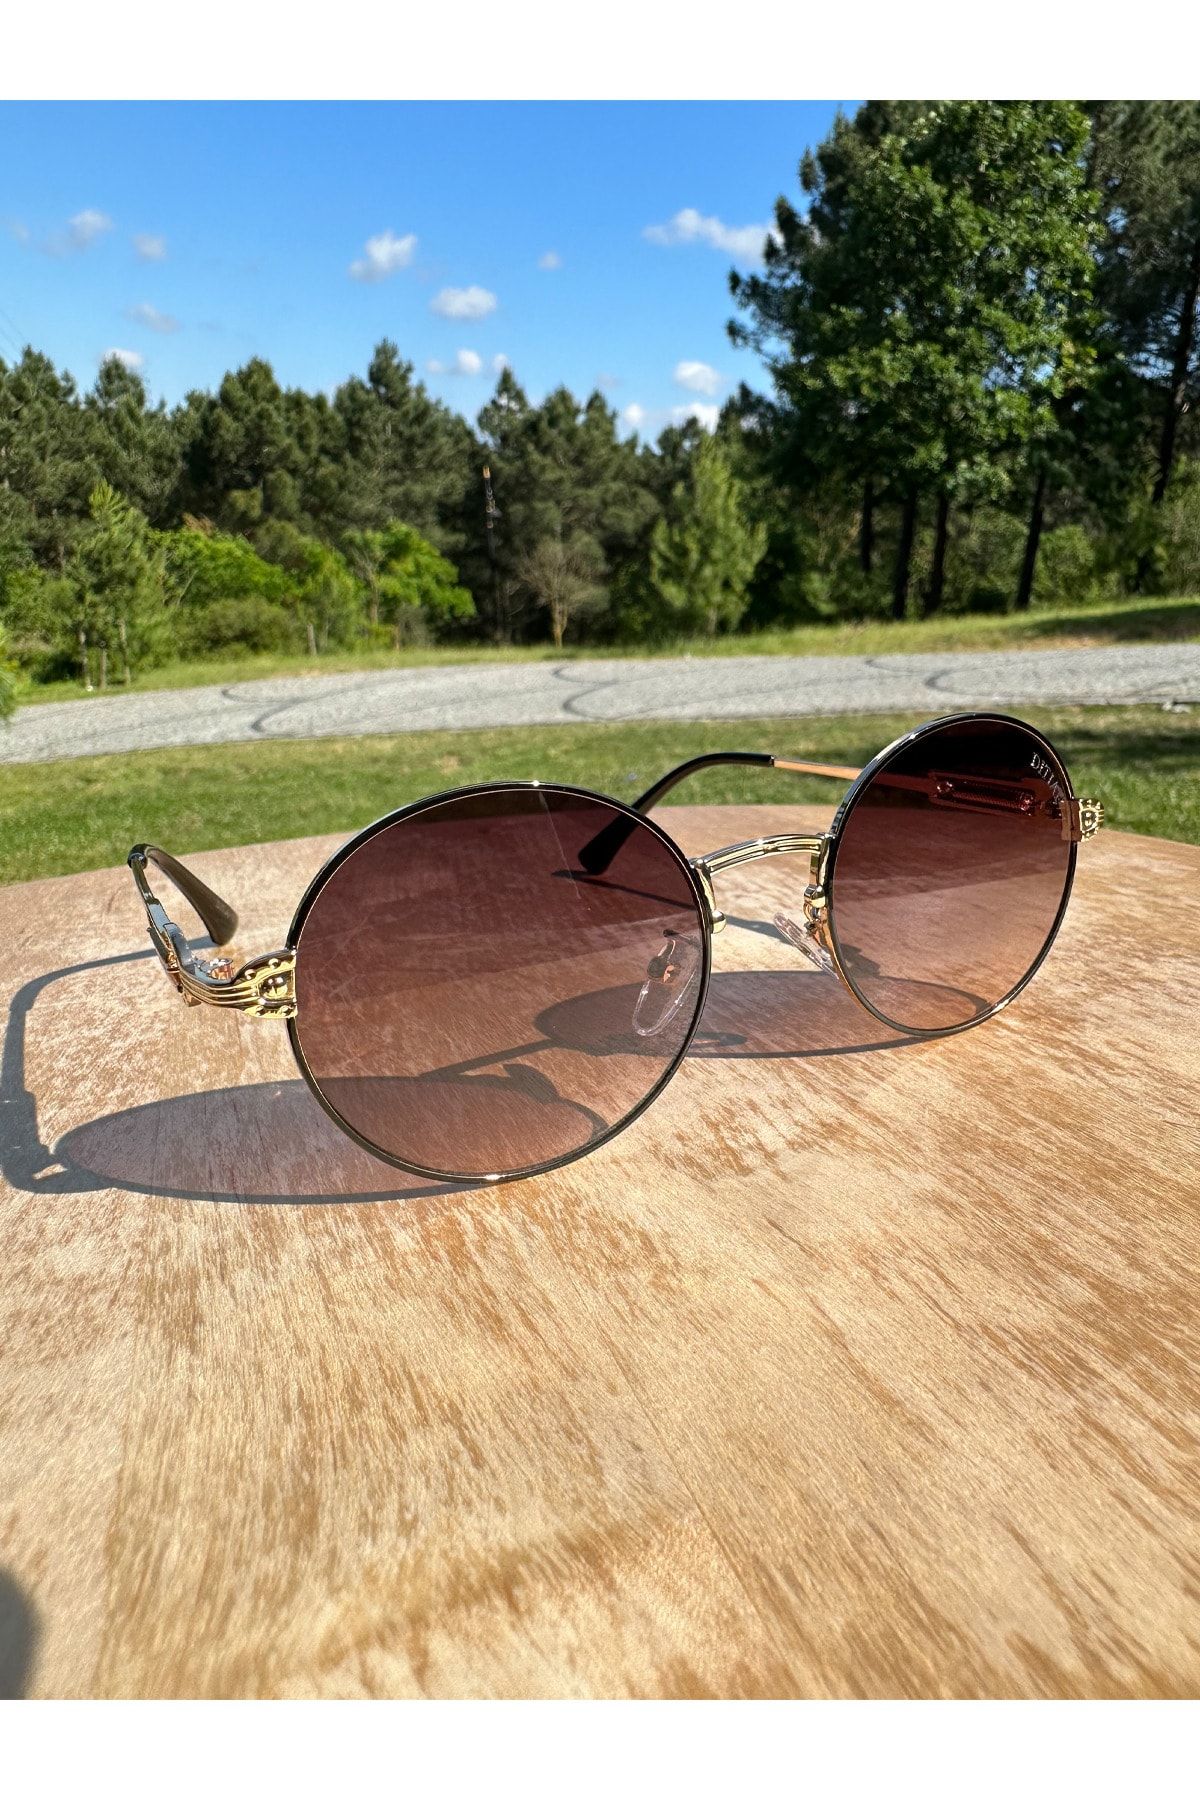 VisionGlasses DITIAI V4 Model Kahverengi Camlı Yuvarlak Kadın Güneş Gözlüğü